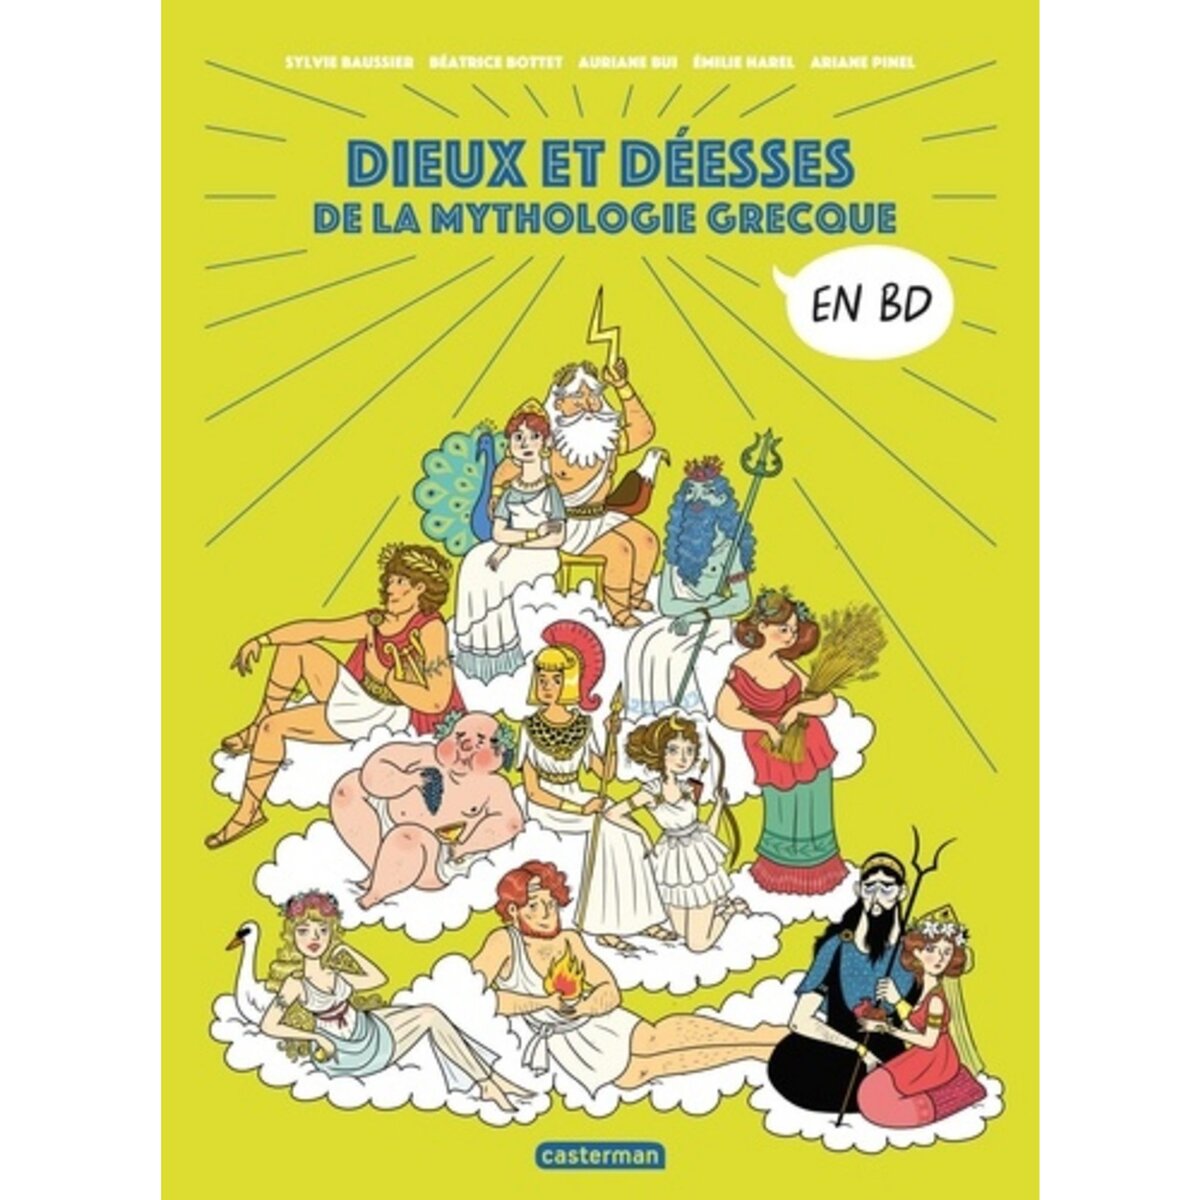  LA MYTHOLOGIE EN BD : DIEUX ET DEESSES DE LA MYTHOLOGIE GRECQUE, Baussier Sylvie